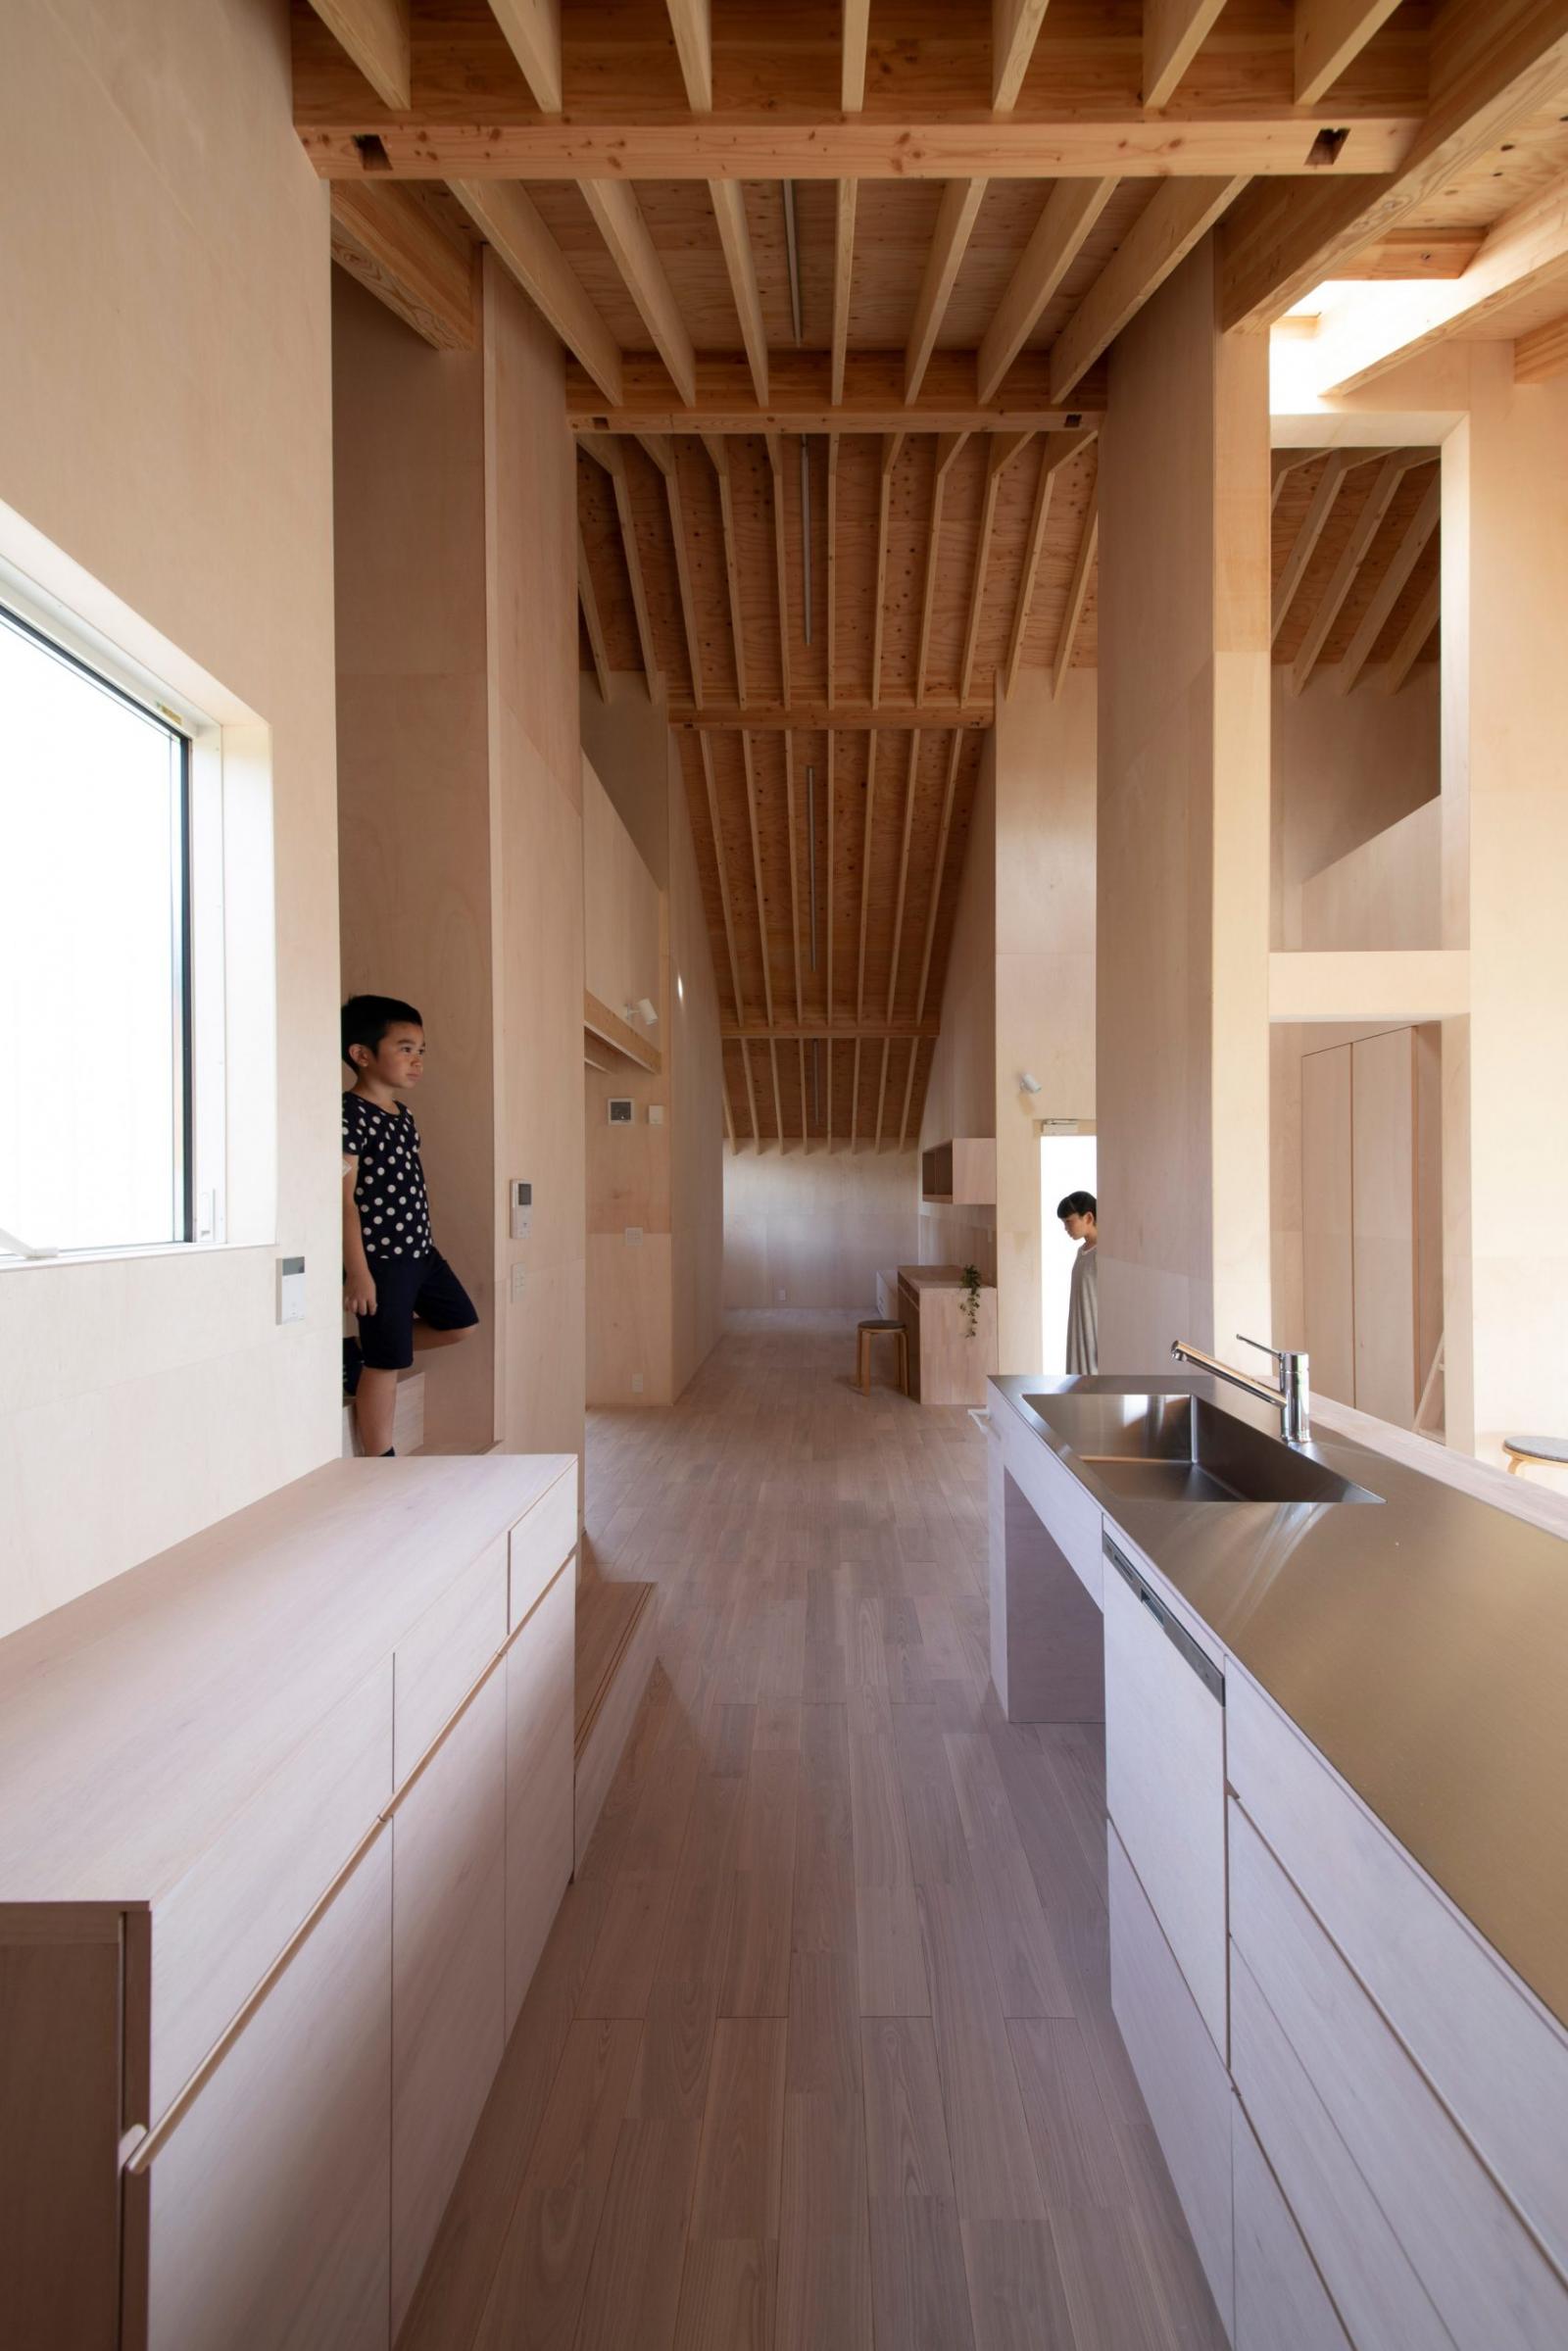 hình ảnh phòng bếp sử dụng nội thất gỗ chủ đạo trong ngôi nhà Nhật